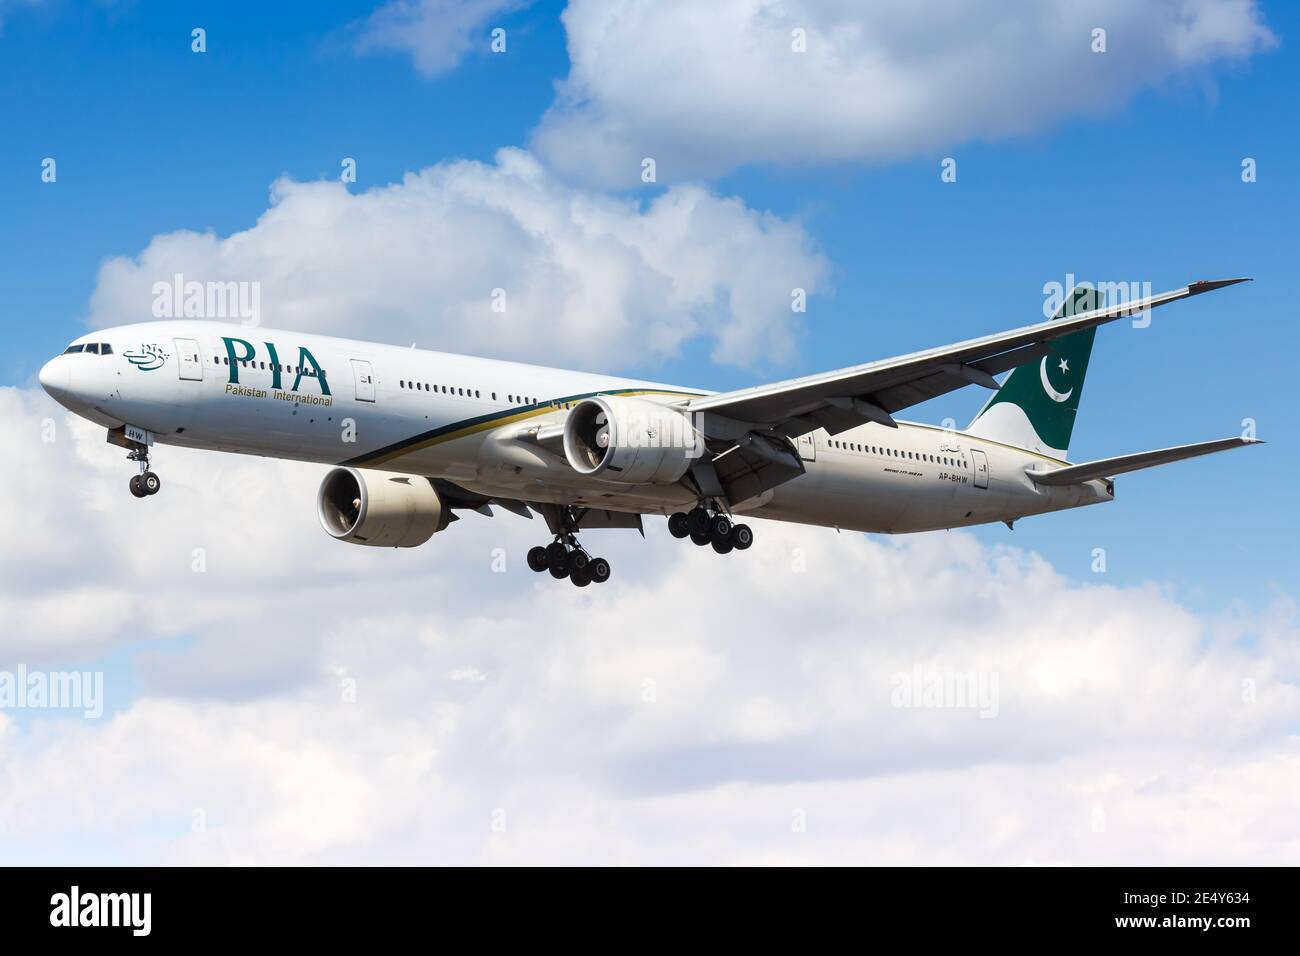 Londres, Royaume-Uni - 31 juillet 2018 : avion PIA Pakistan International Boeing 777 à l'aéroport de Londres Heathrow (LHR) au Royaume-Uni. Banque D'Images